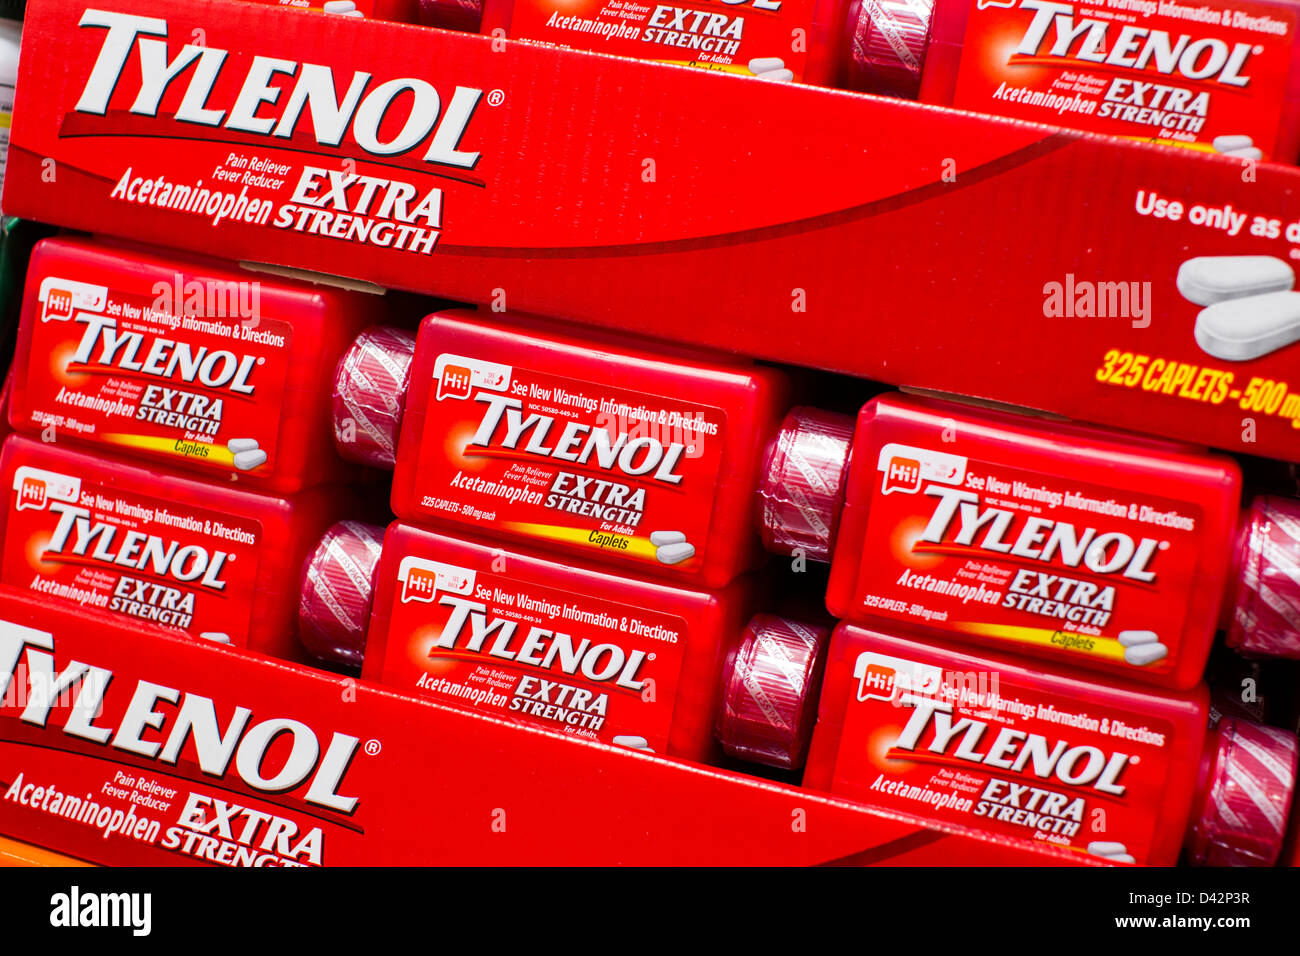 Tylenol extra strength en exhibición en un Costco Wholesale Warehouse Club. Foto de stock